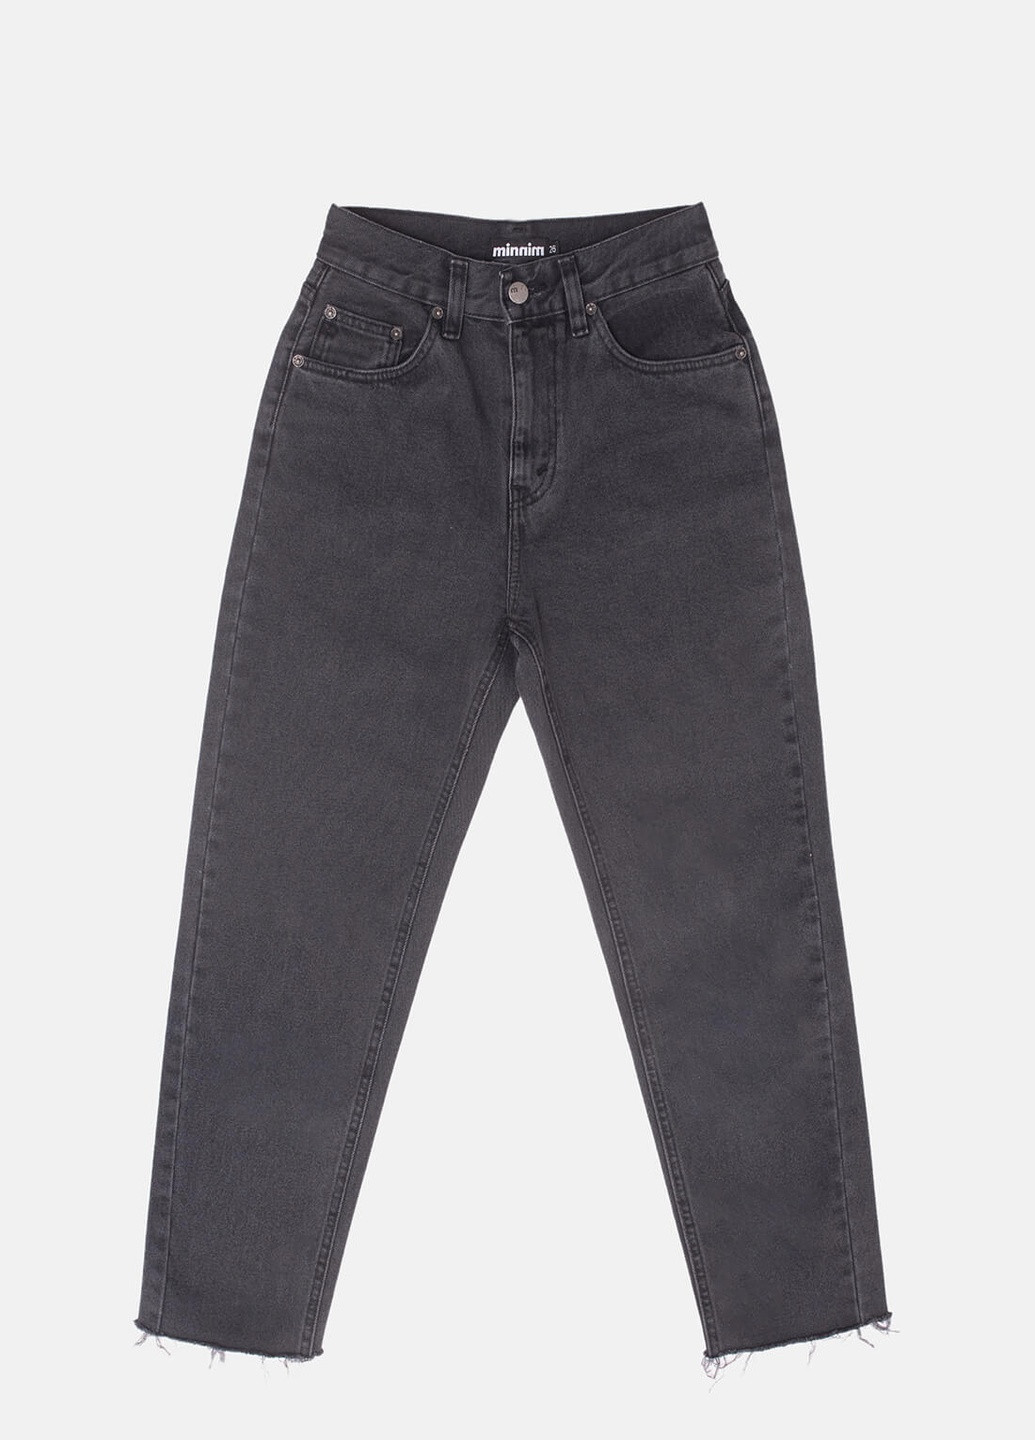 Темно-серые демисезонные буткат фит джинсы женские gray Cropped Minnim